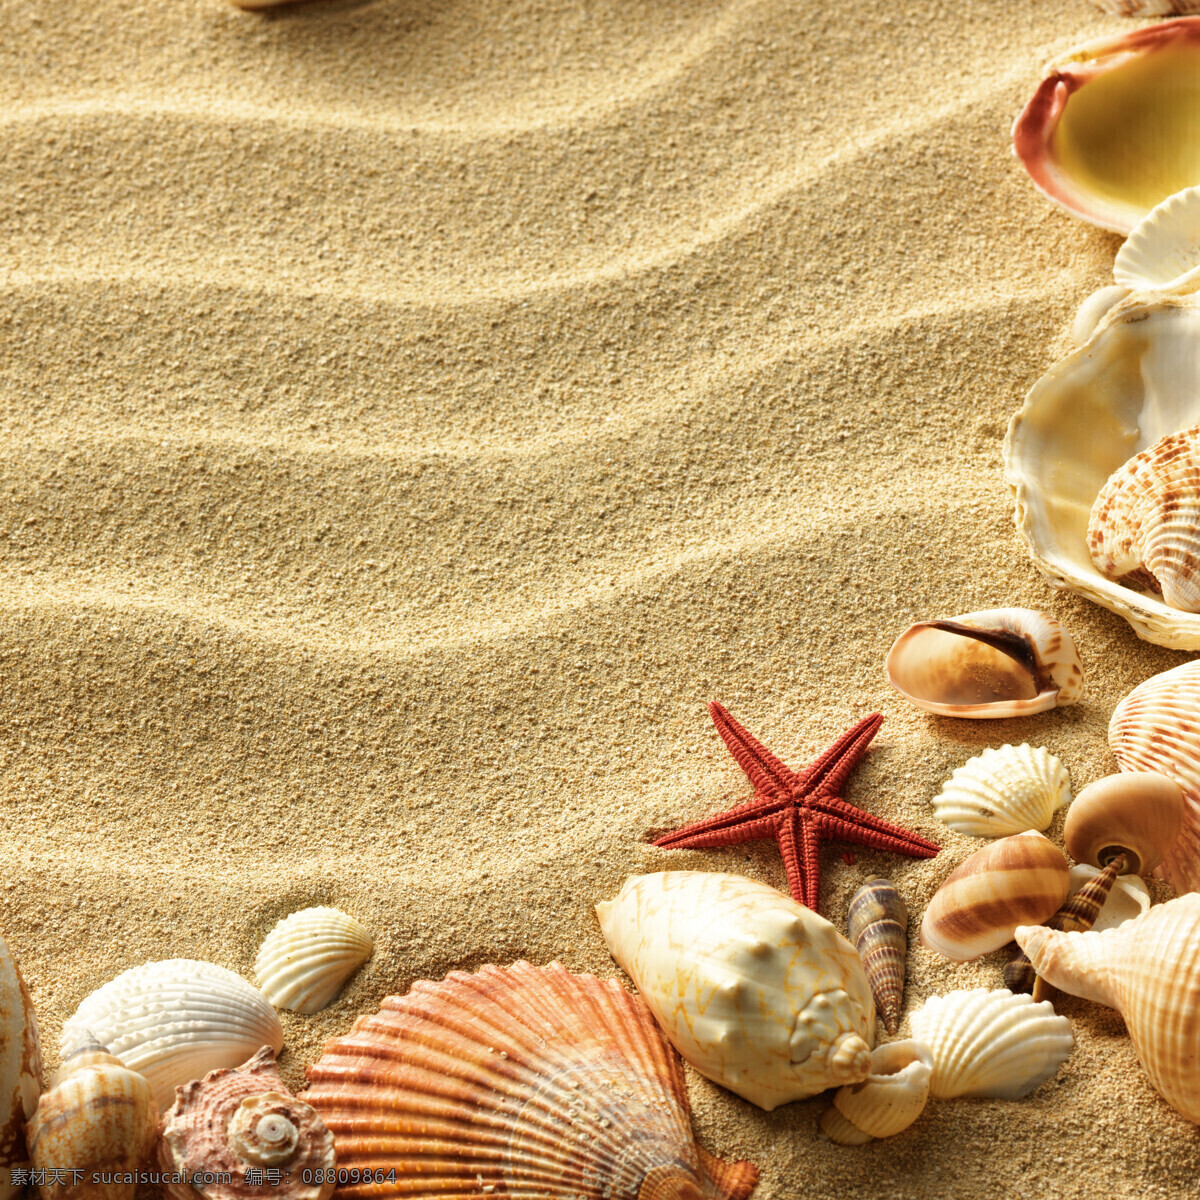 沙滩 上 海螺 海星 沙子 海滩 贝壳 海洋生物 大海图片 风景图片